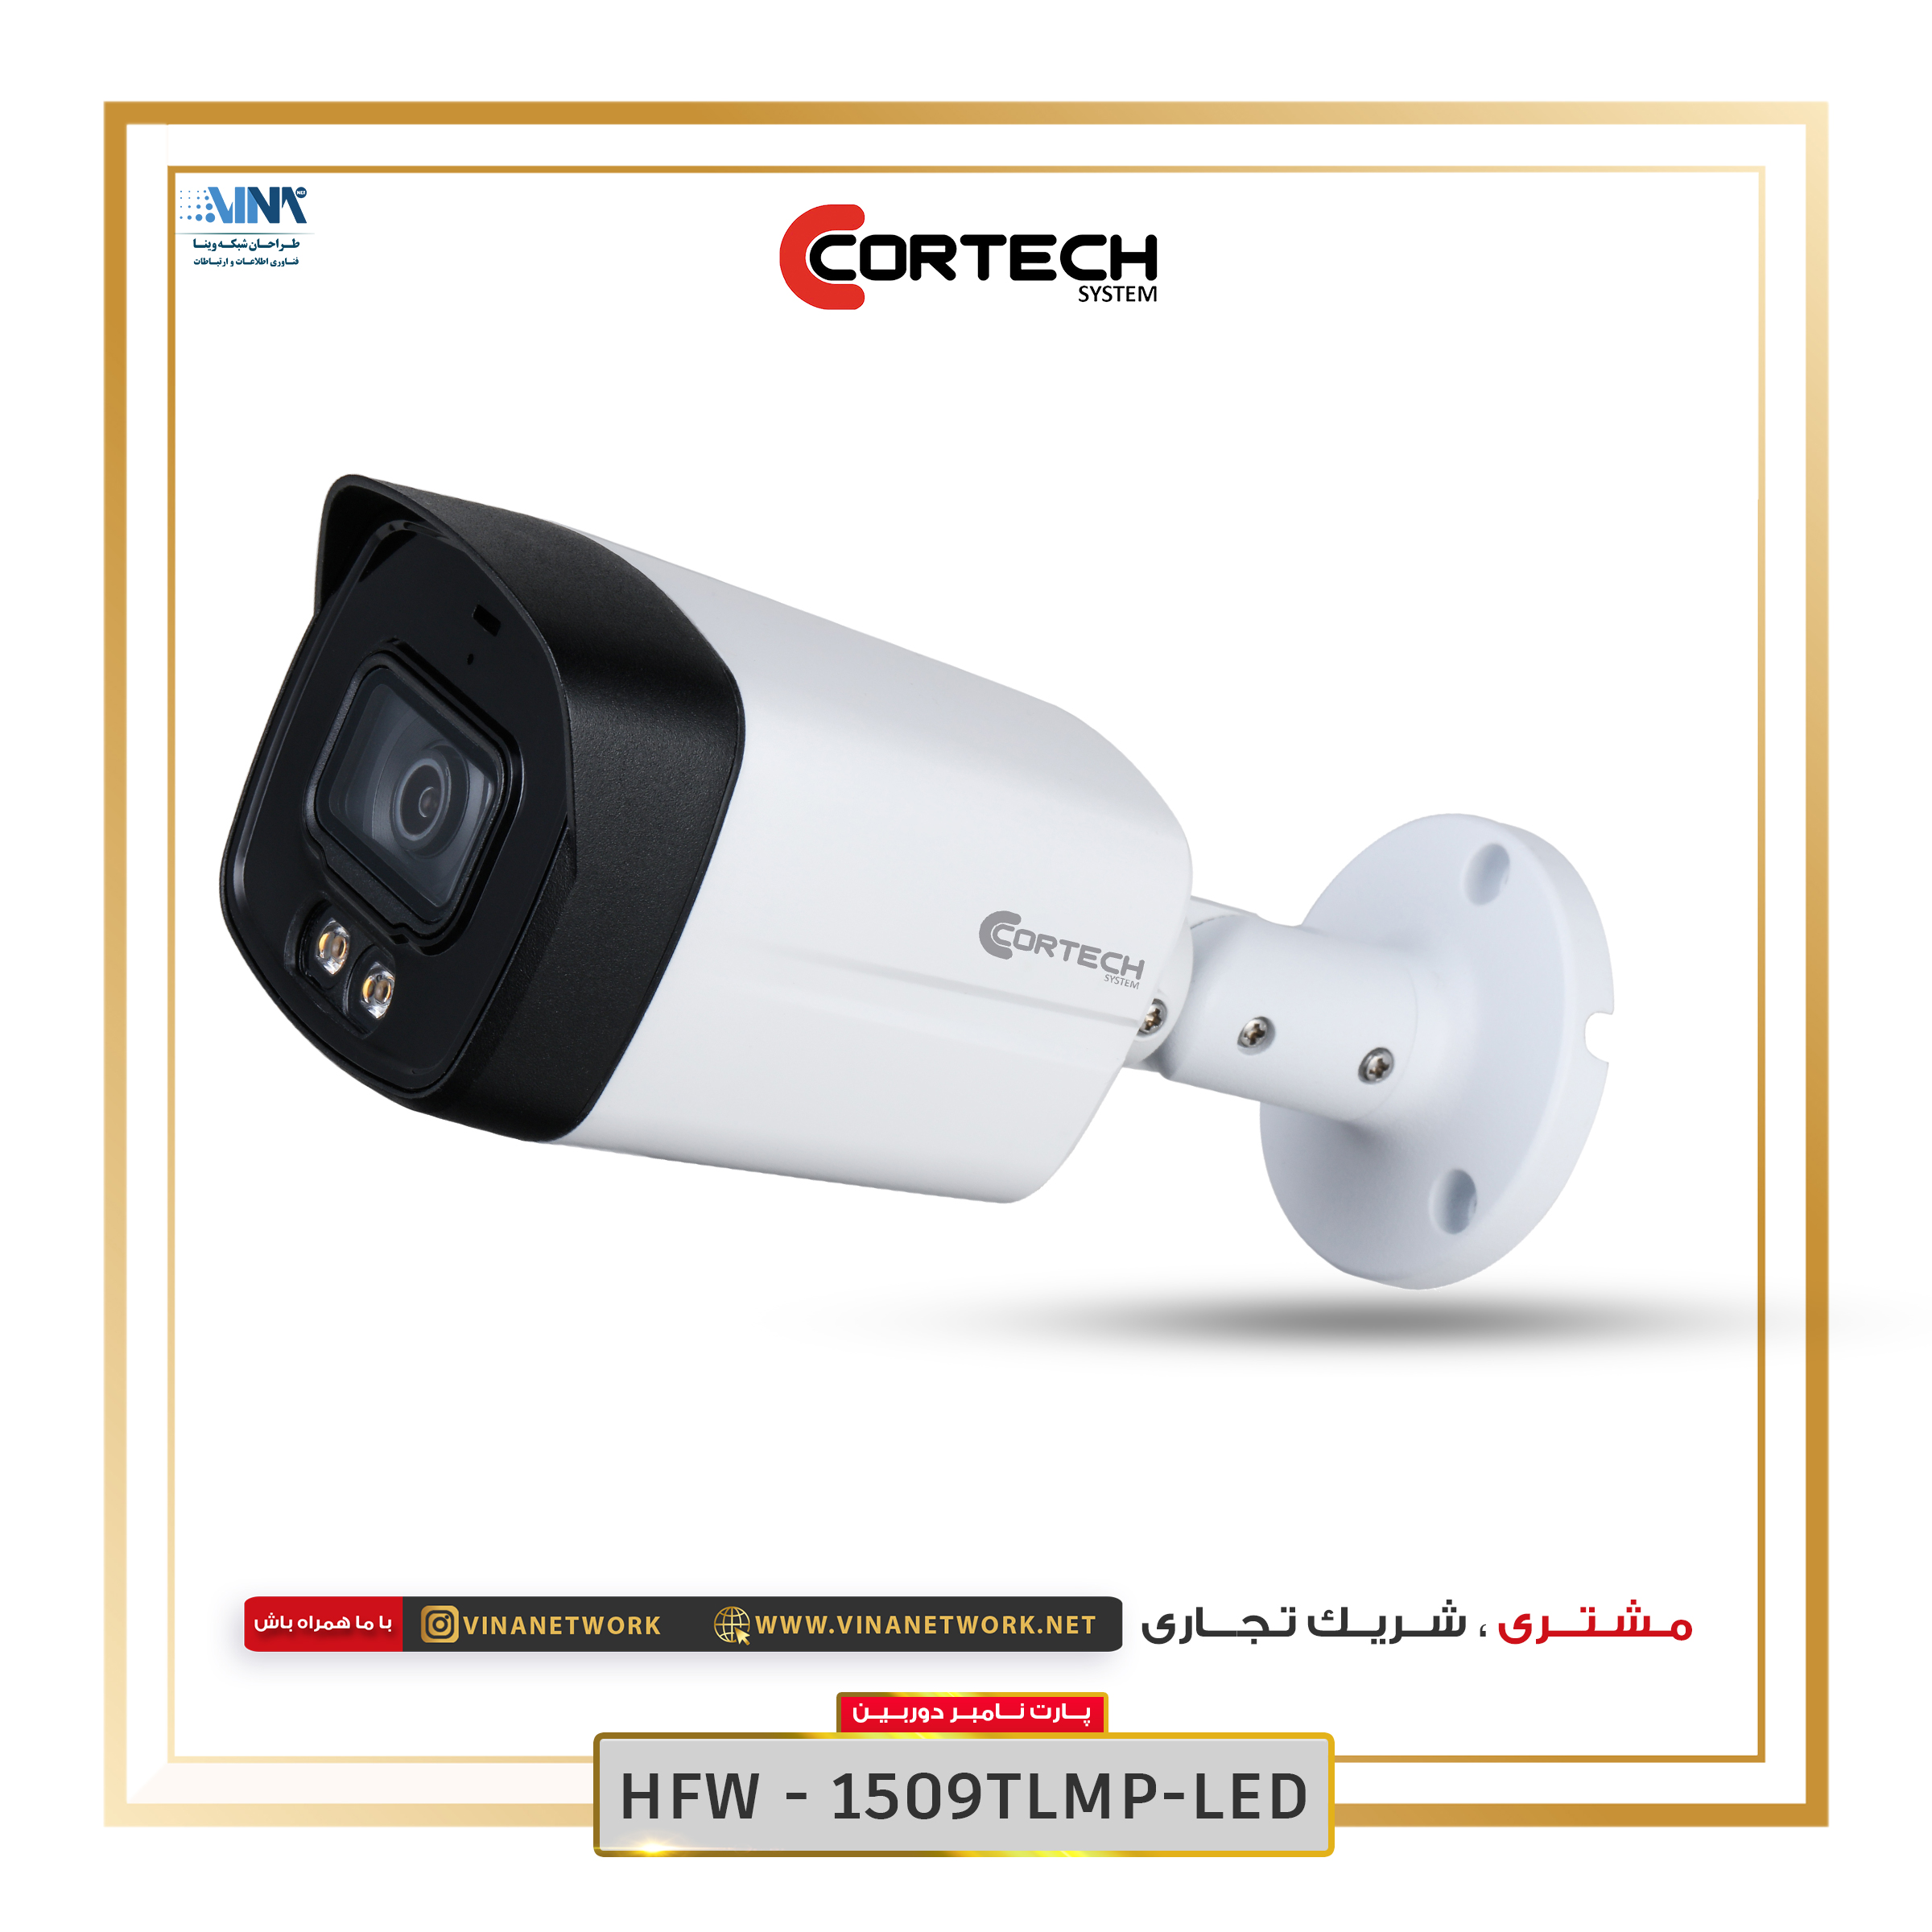 دوربین کورتک مدل HFW1509TLMP-LED